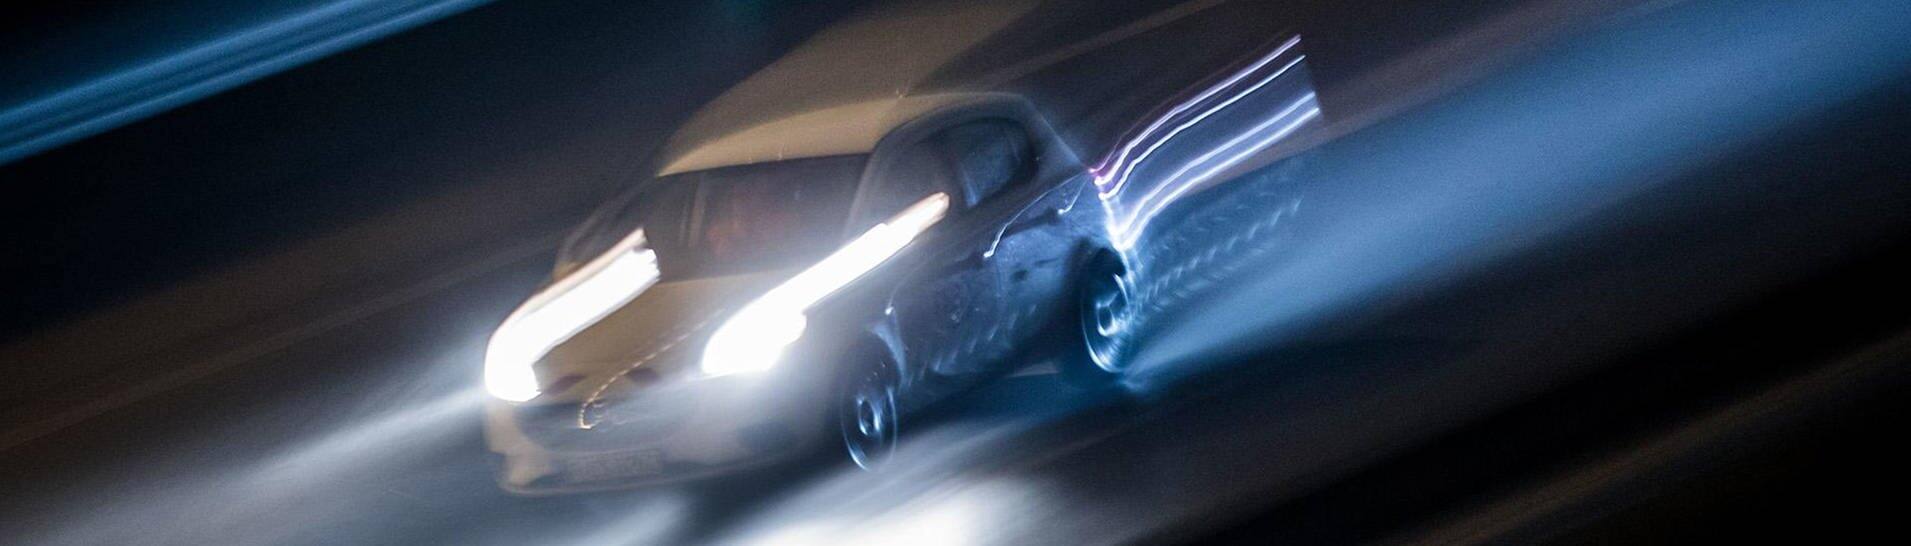 Schnell fahrendes Auto in der Nacht (Foto: dpa/picture-alliance)